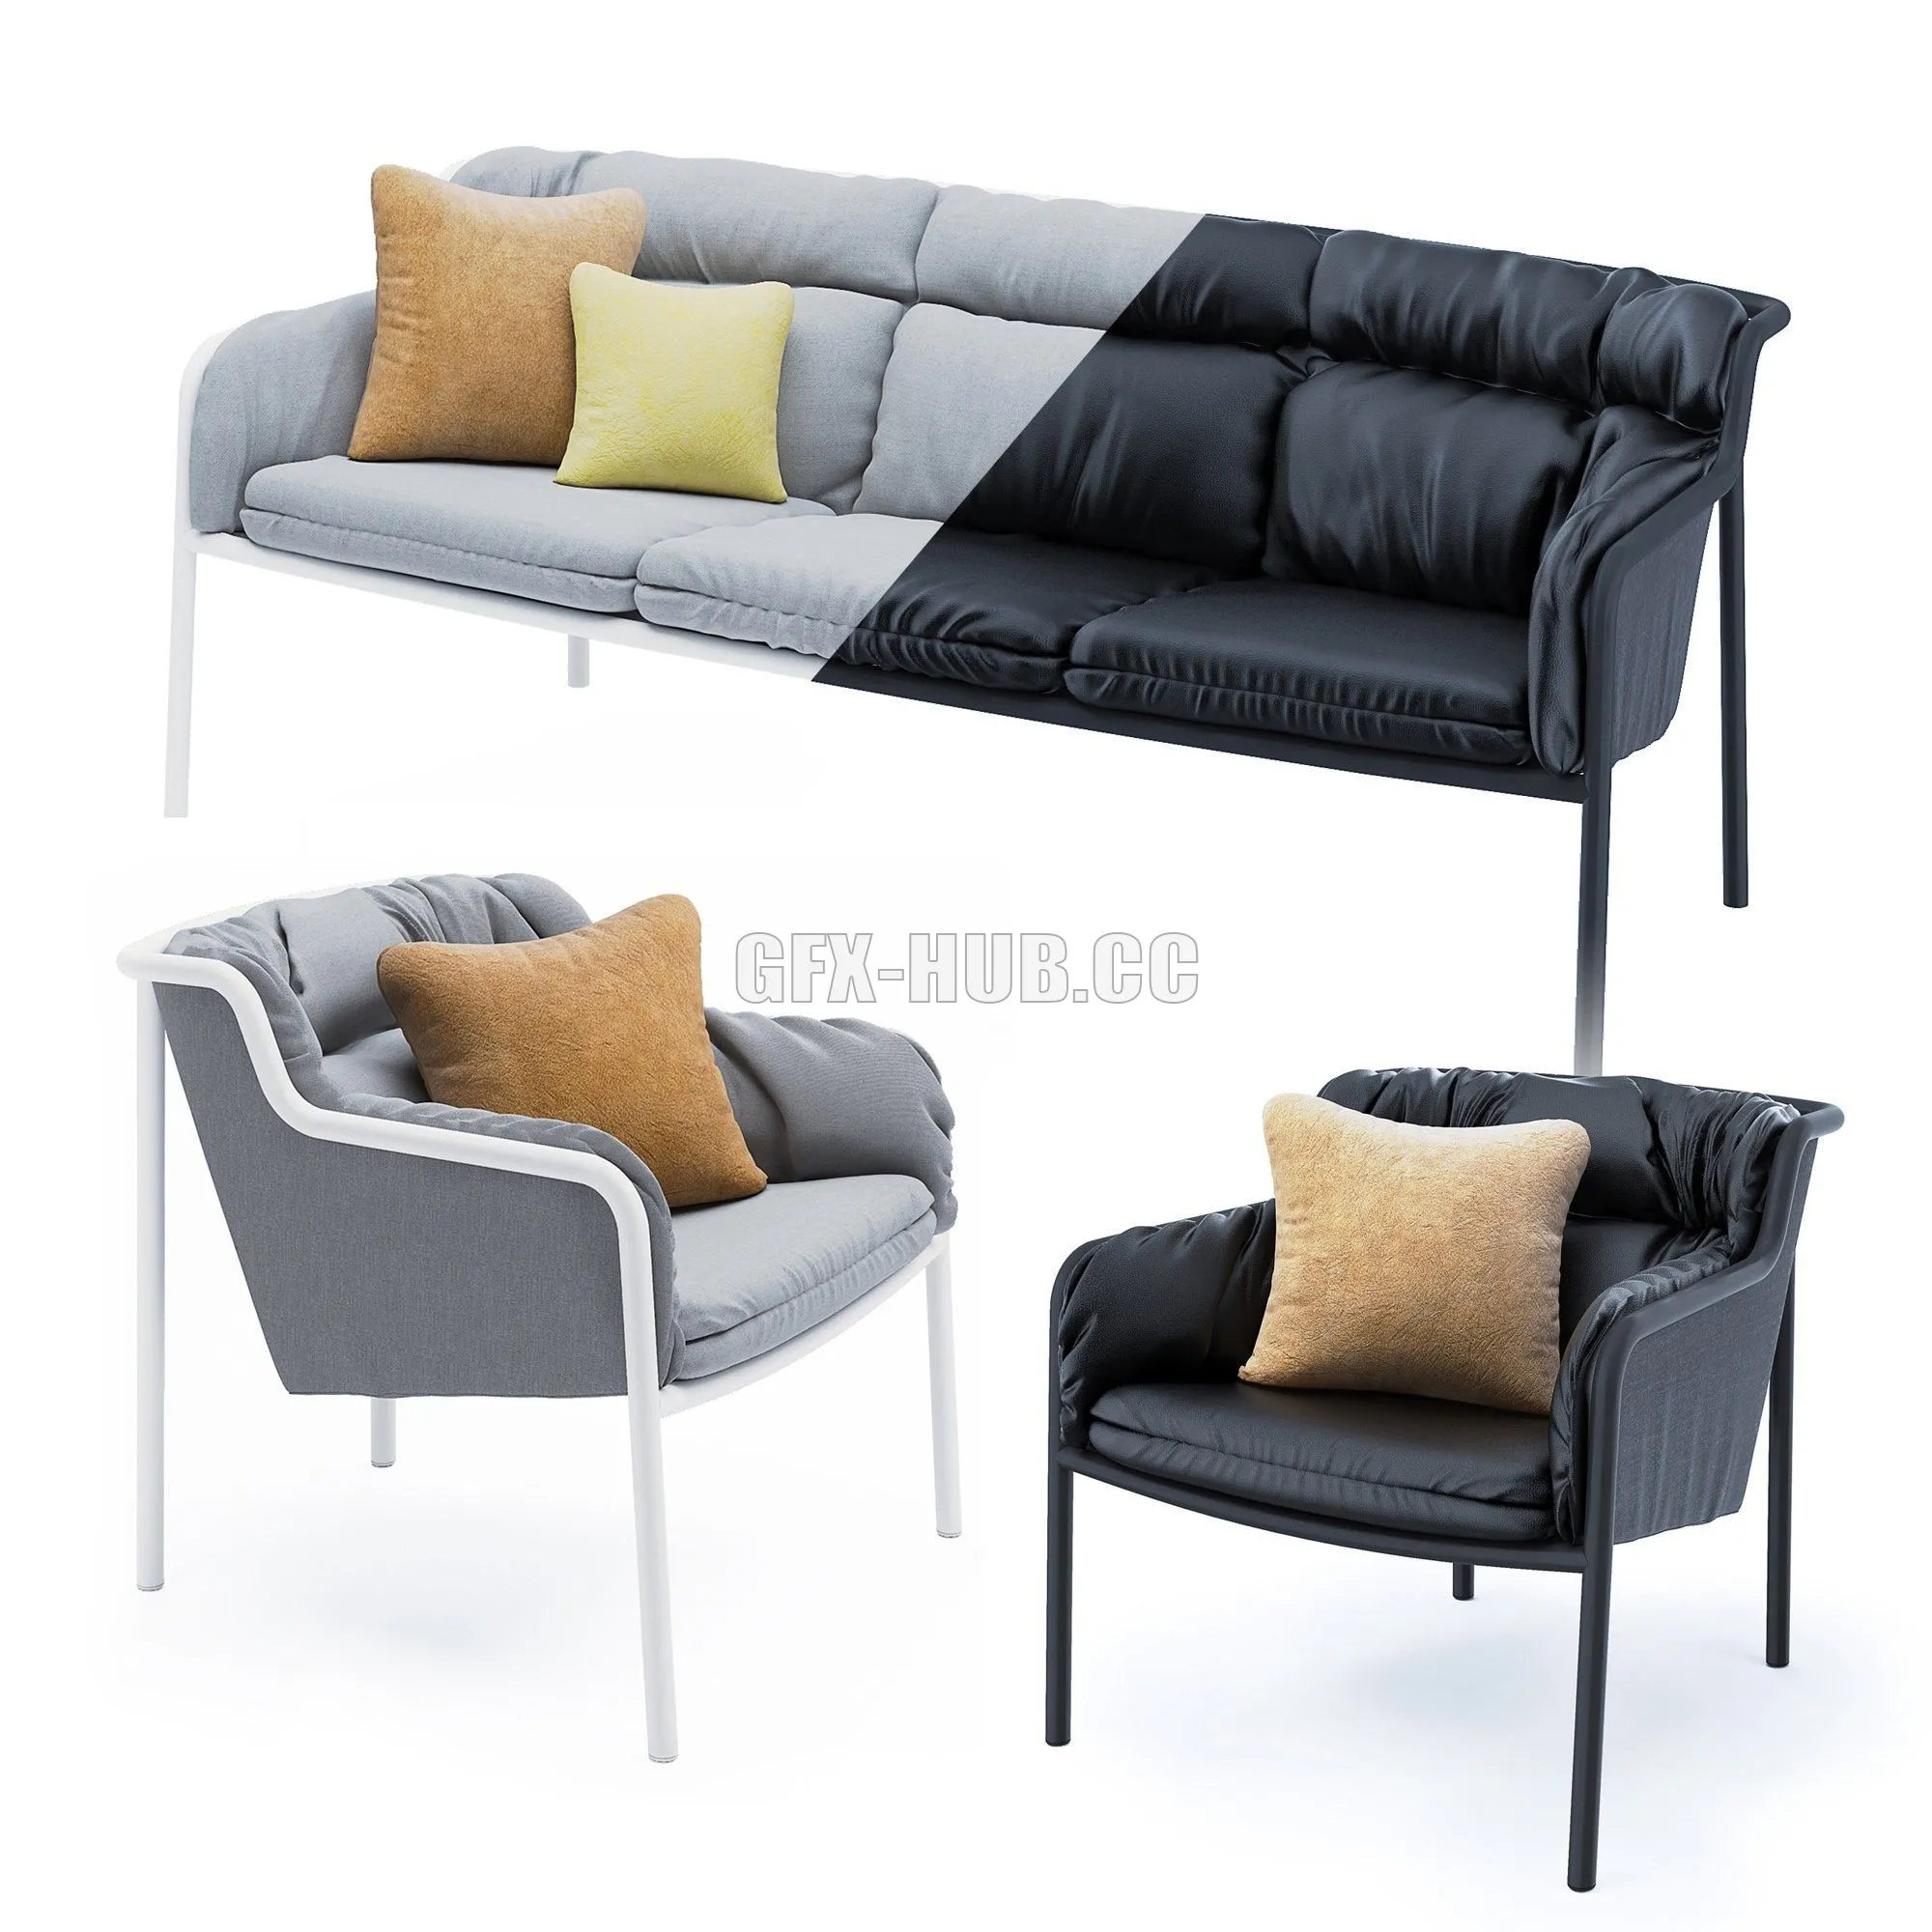 Haddoc set sofa and armchair – 215991